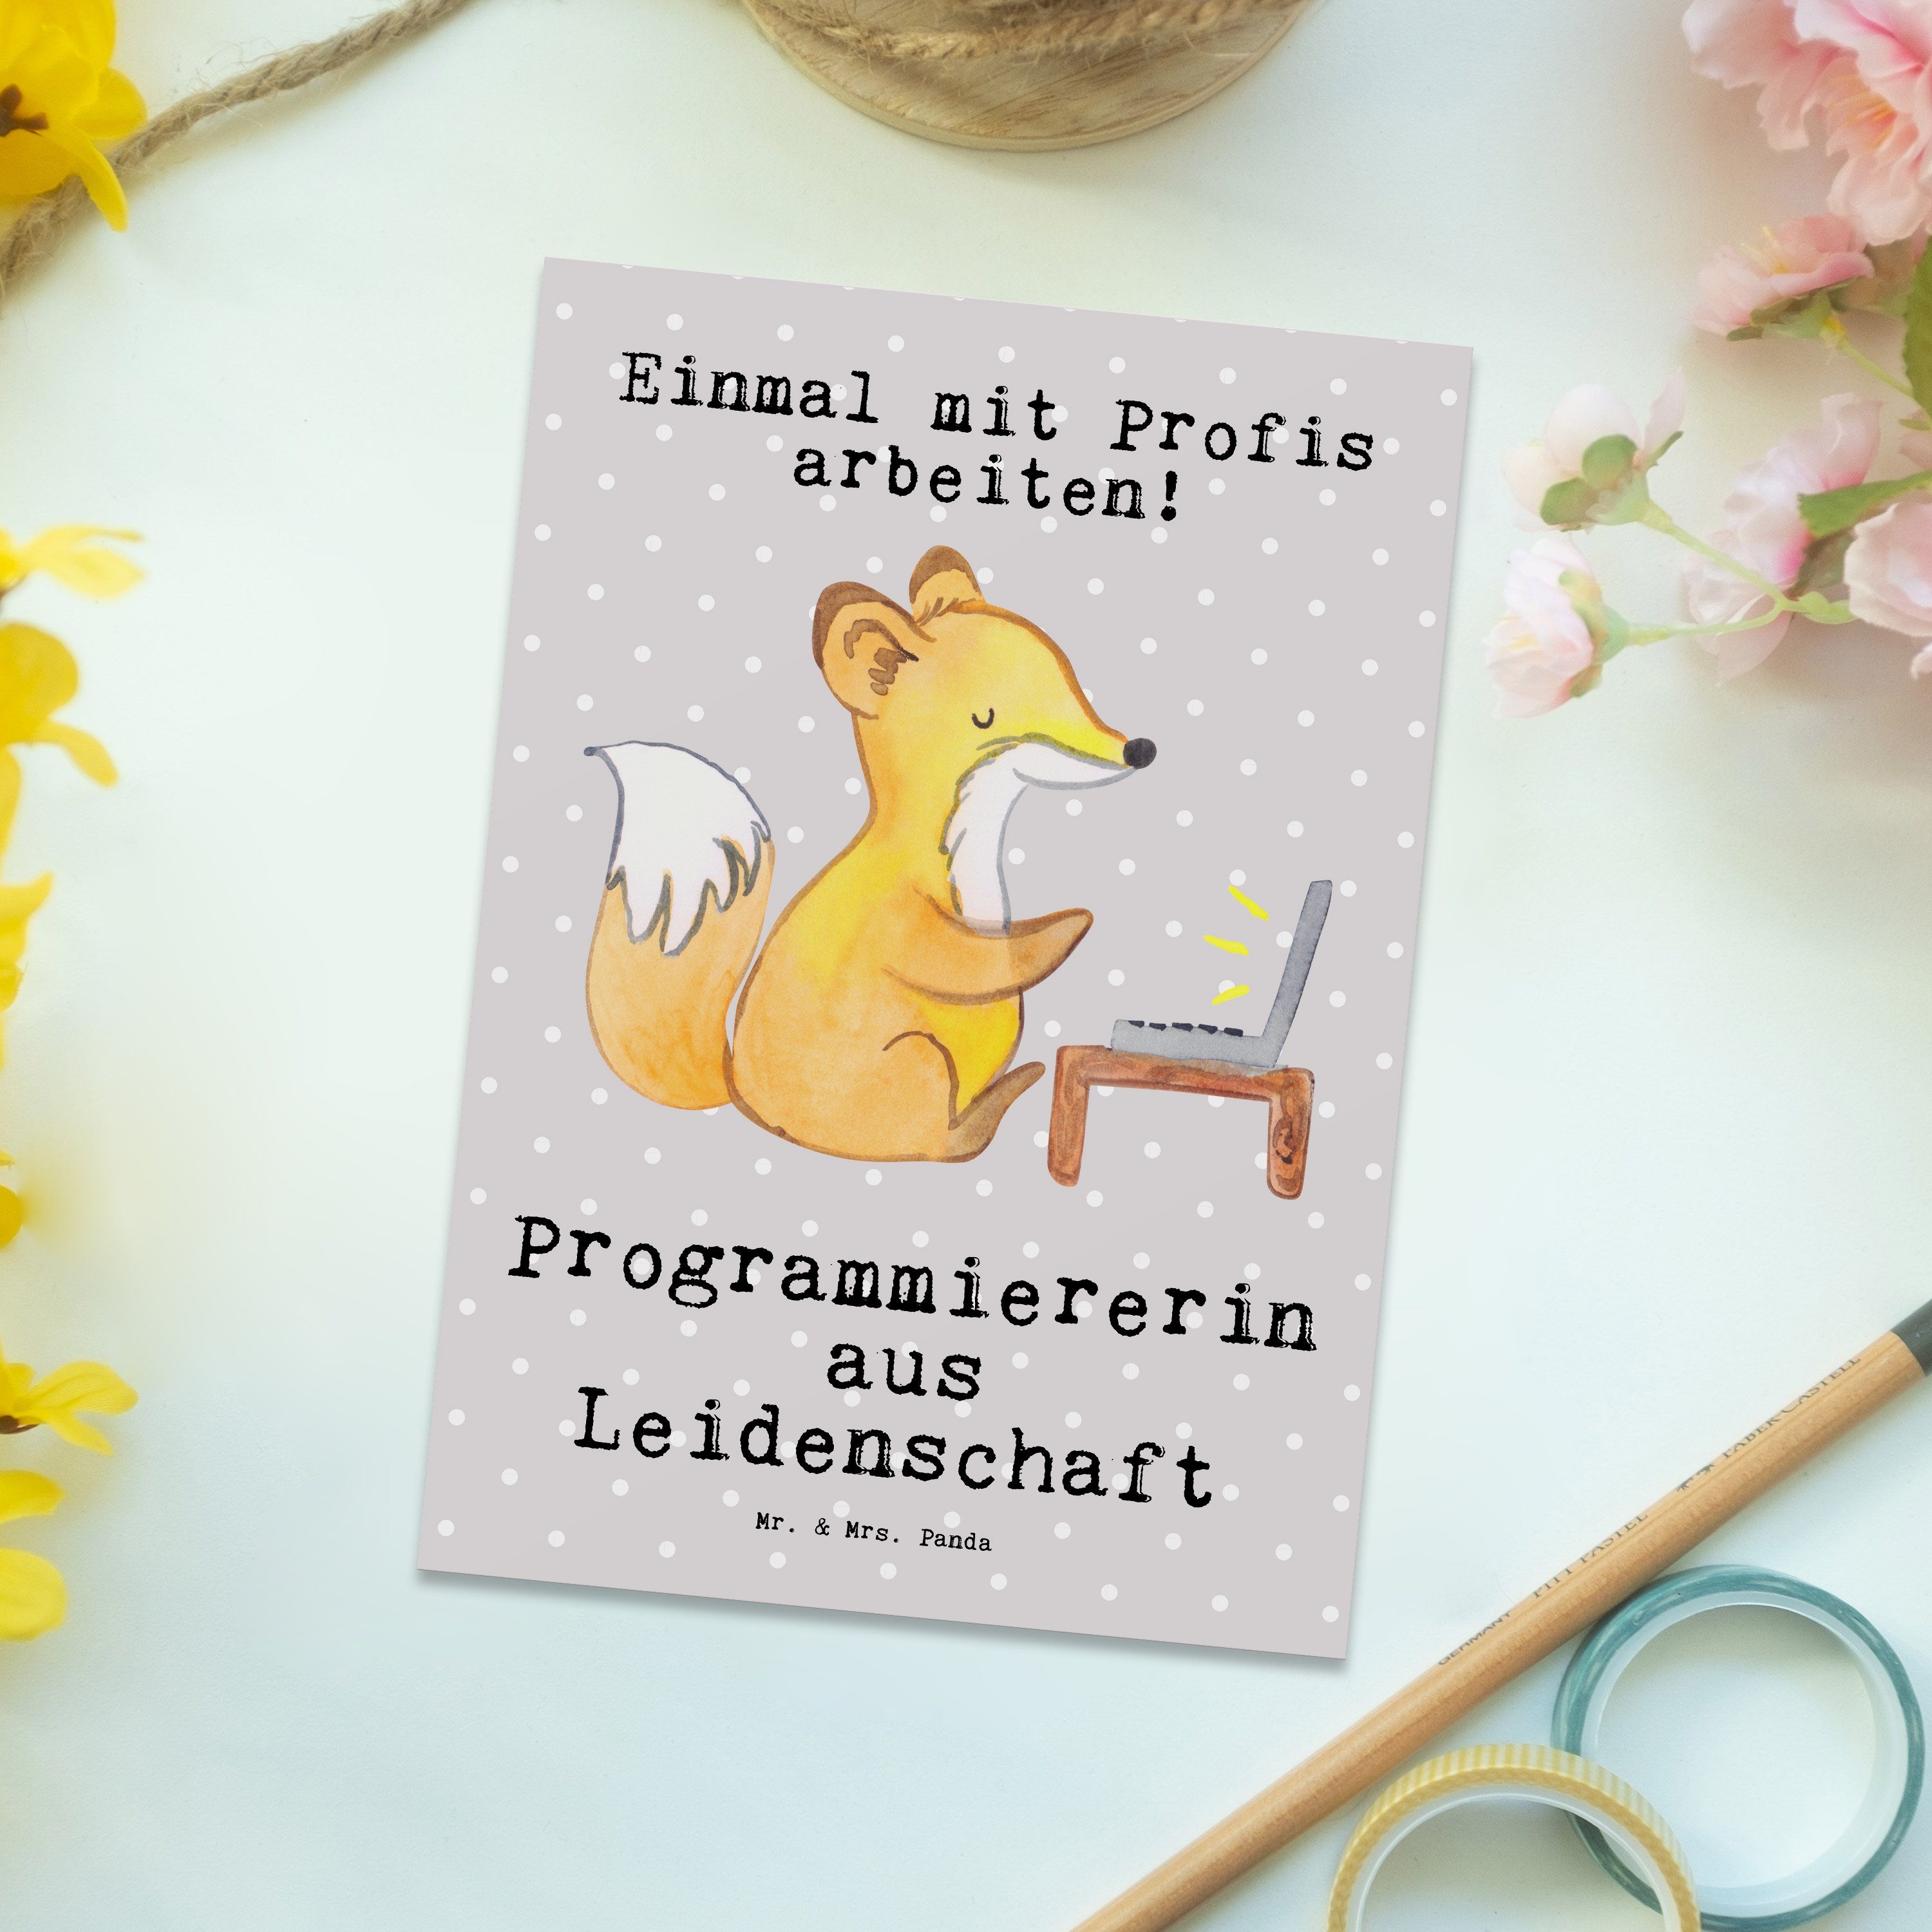 Mr. l - Grau Panda & aus Postkarte Problem Geschenk, Pastell Programmiererin Leidenschaft - Mrs.